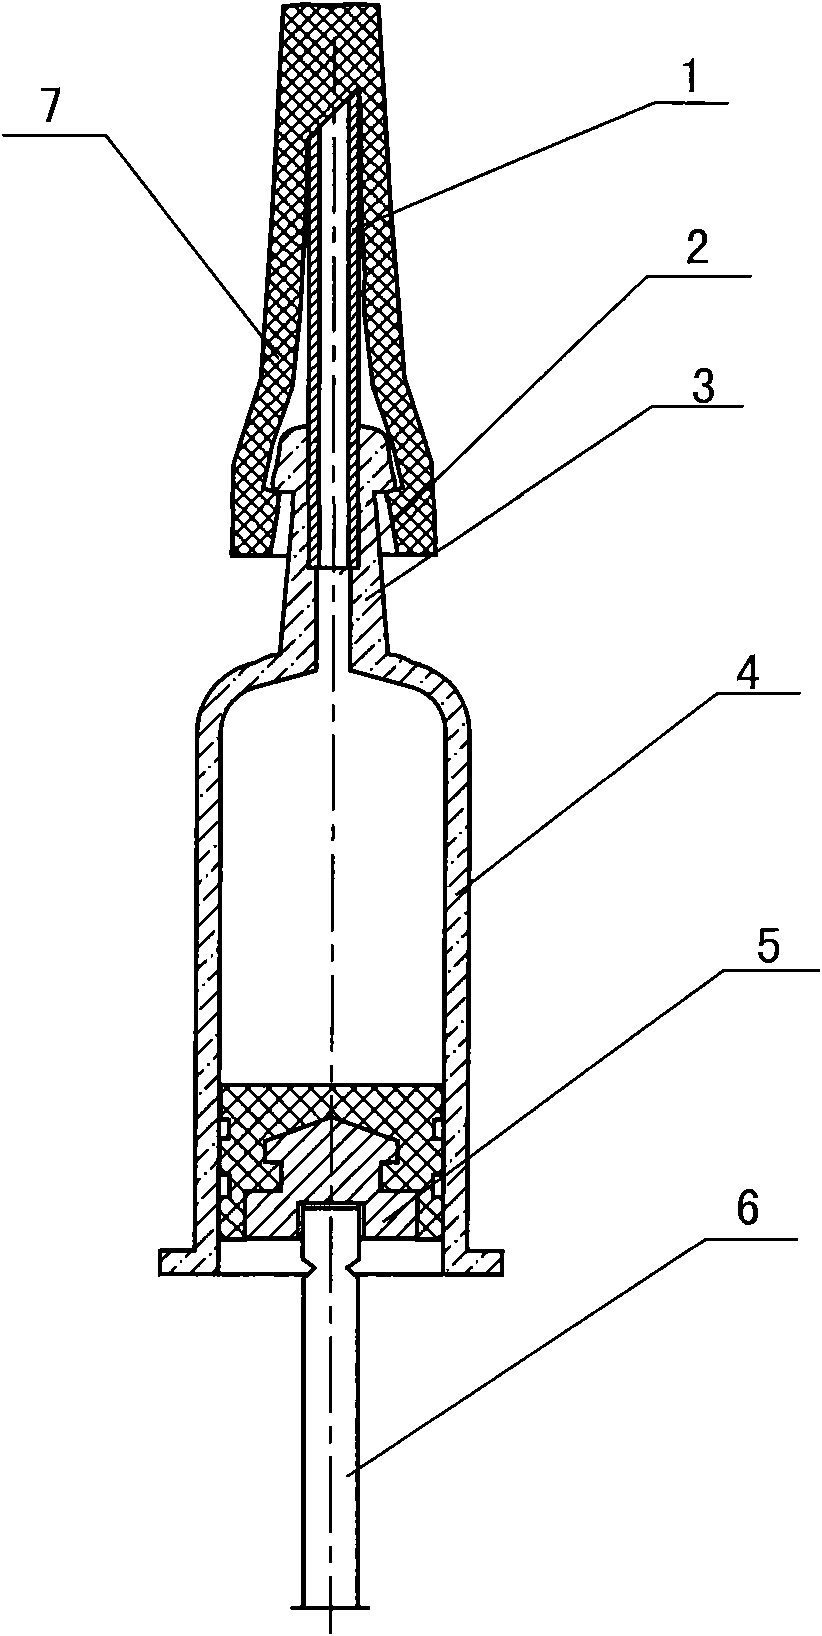 Pre-filled medicinal liquid injector